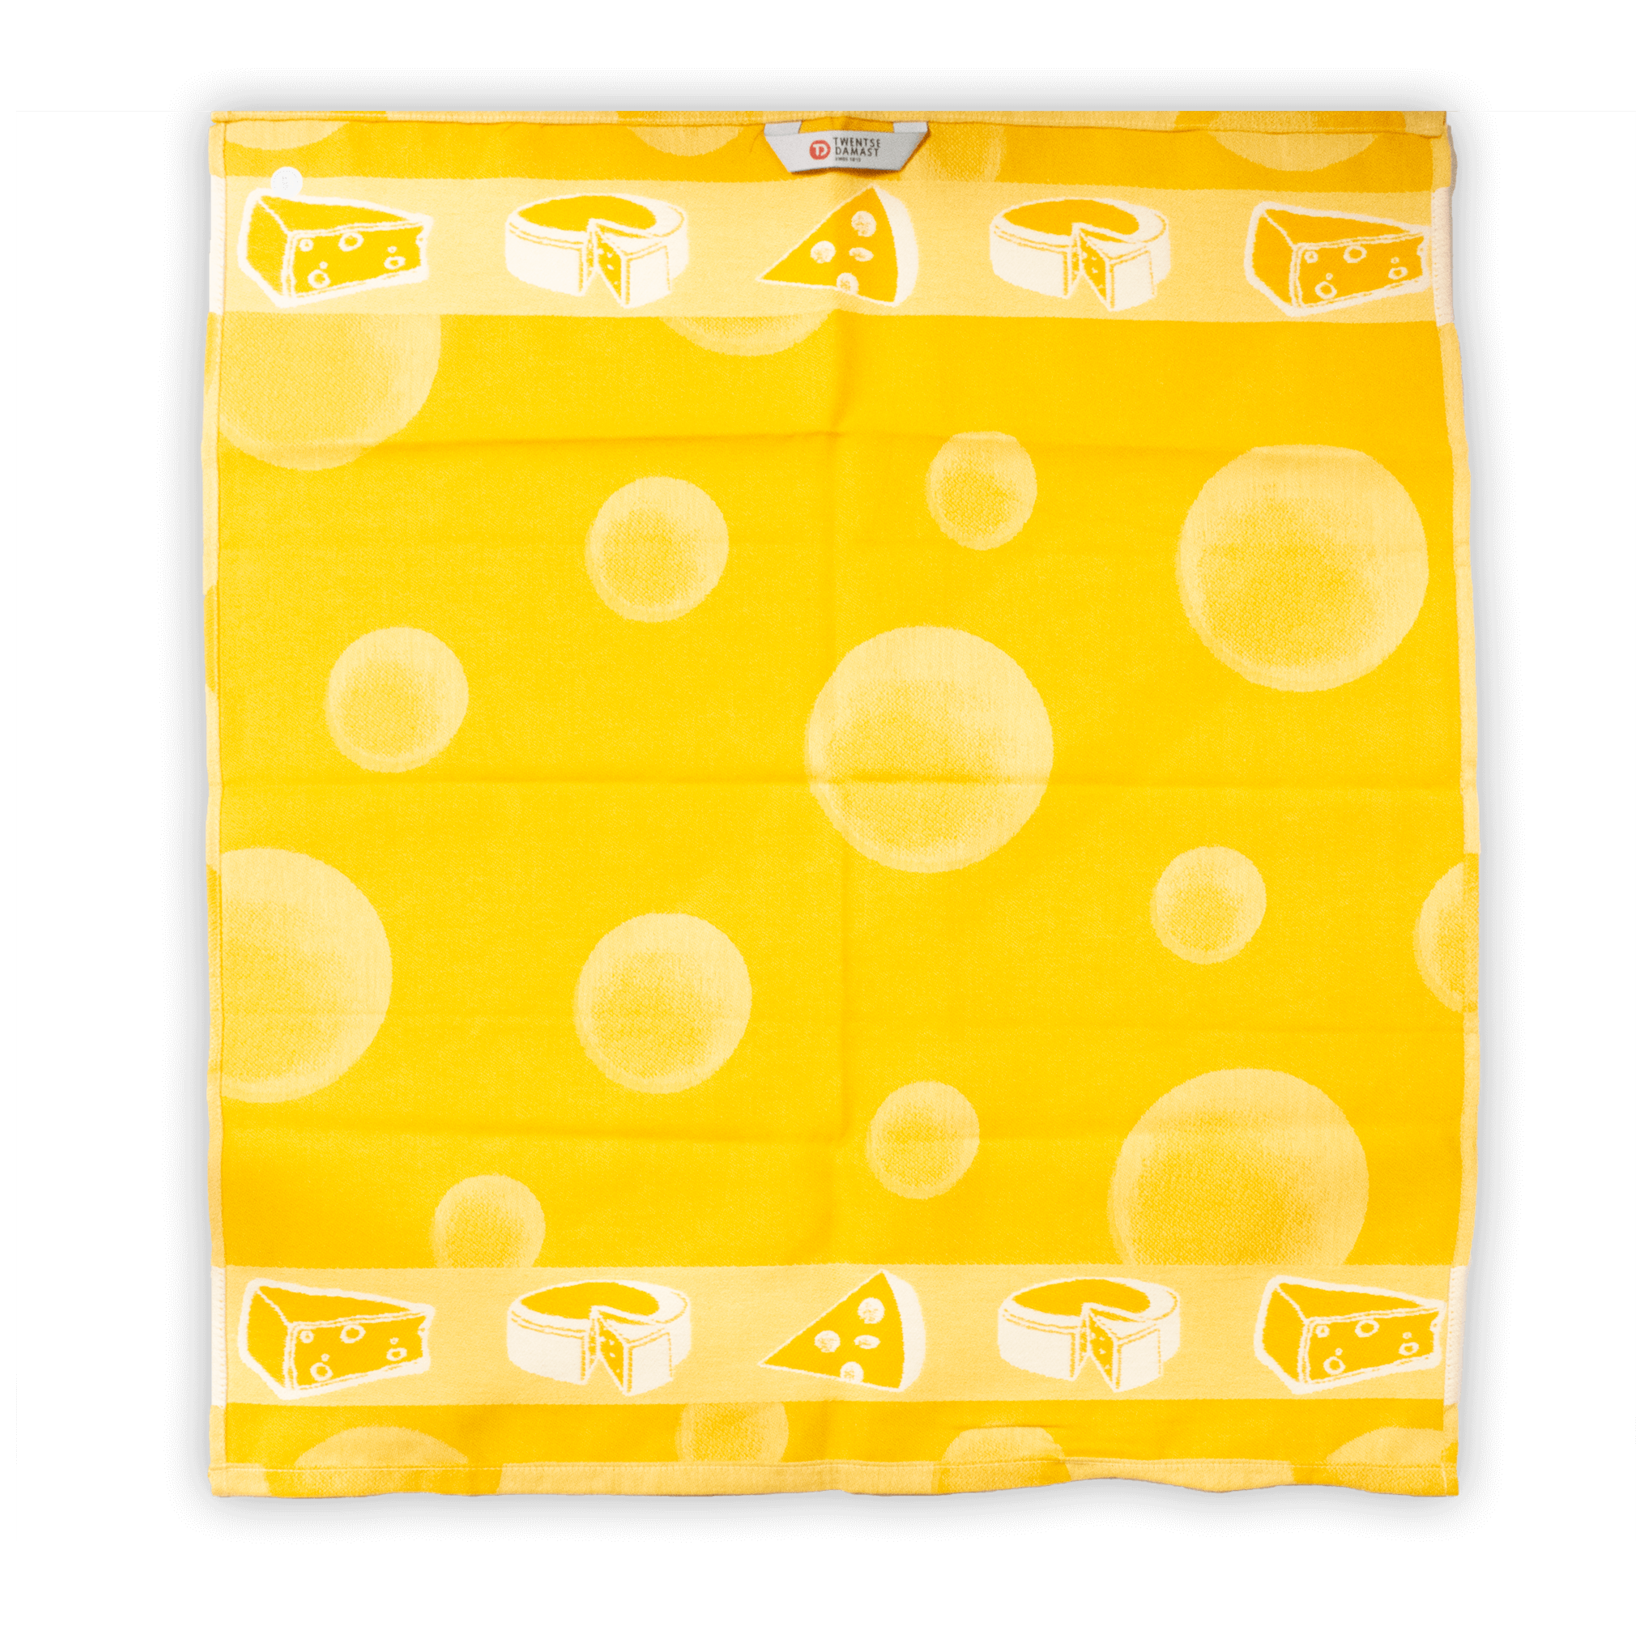 DDDDD DDDDD Kitchen Towel - Yellow Cheese Textile